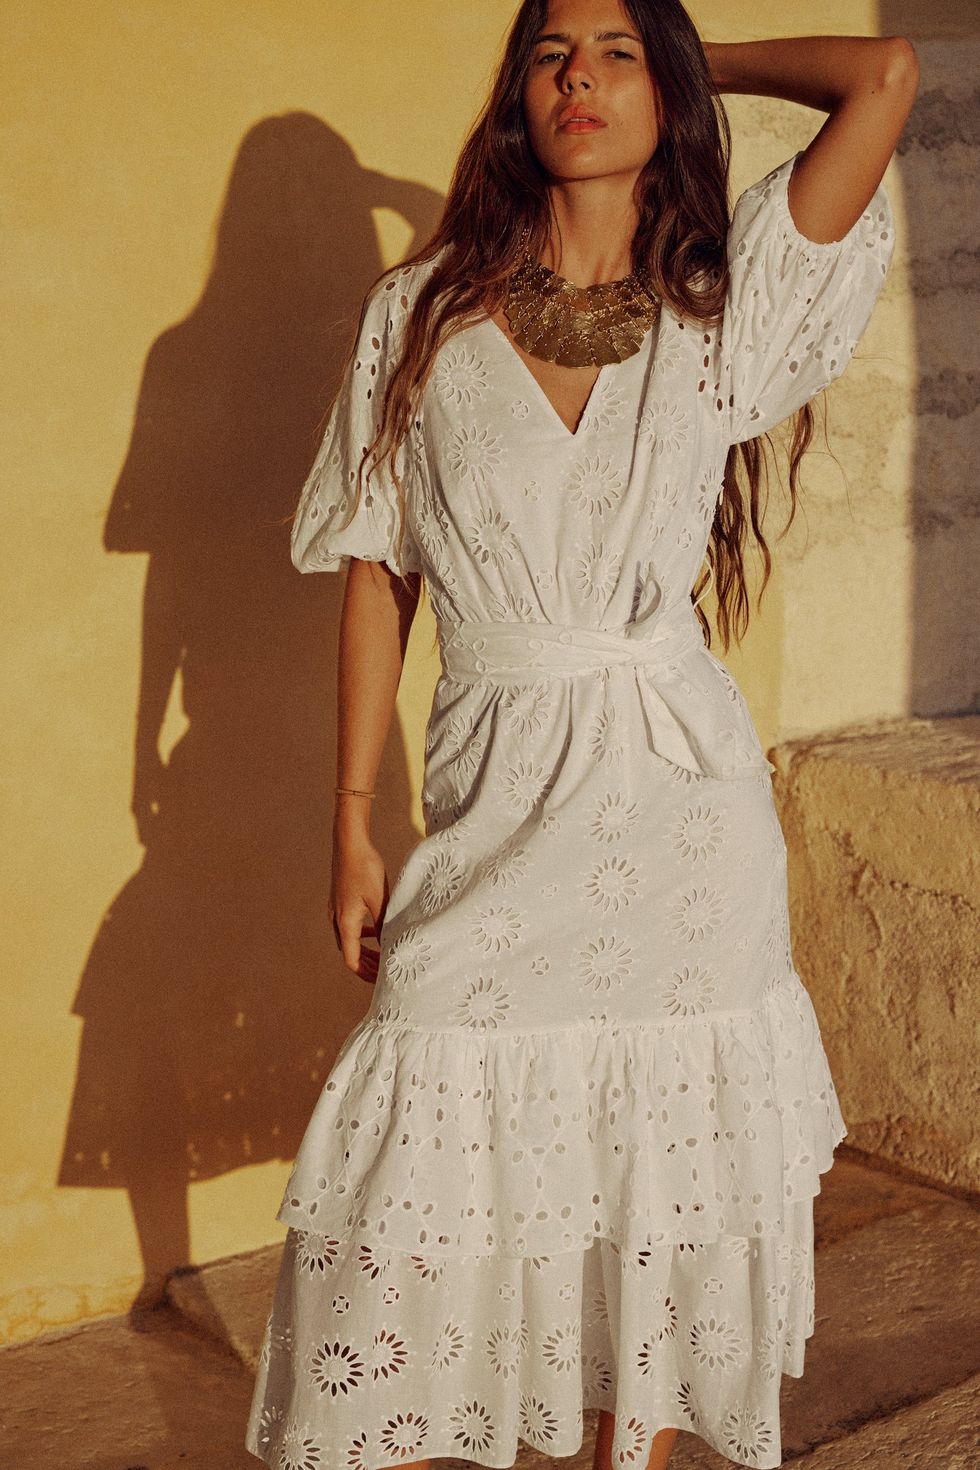 Zara rebaja su espectacular vestido blanco de bordados para verano